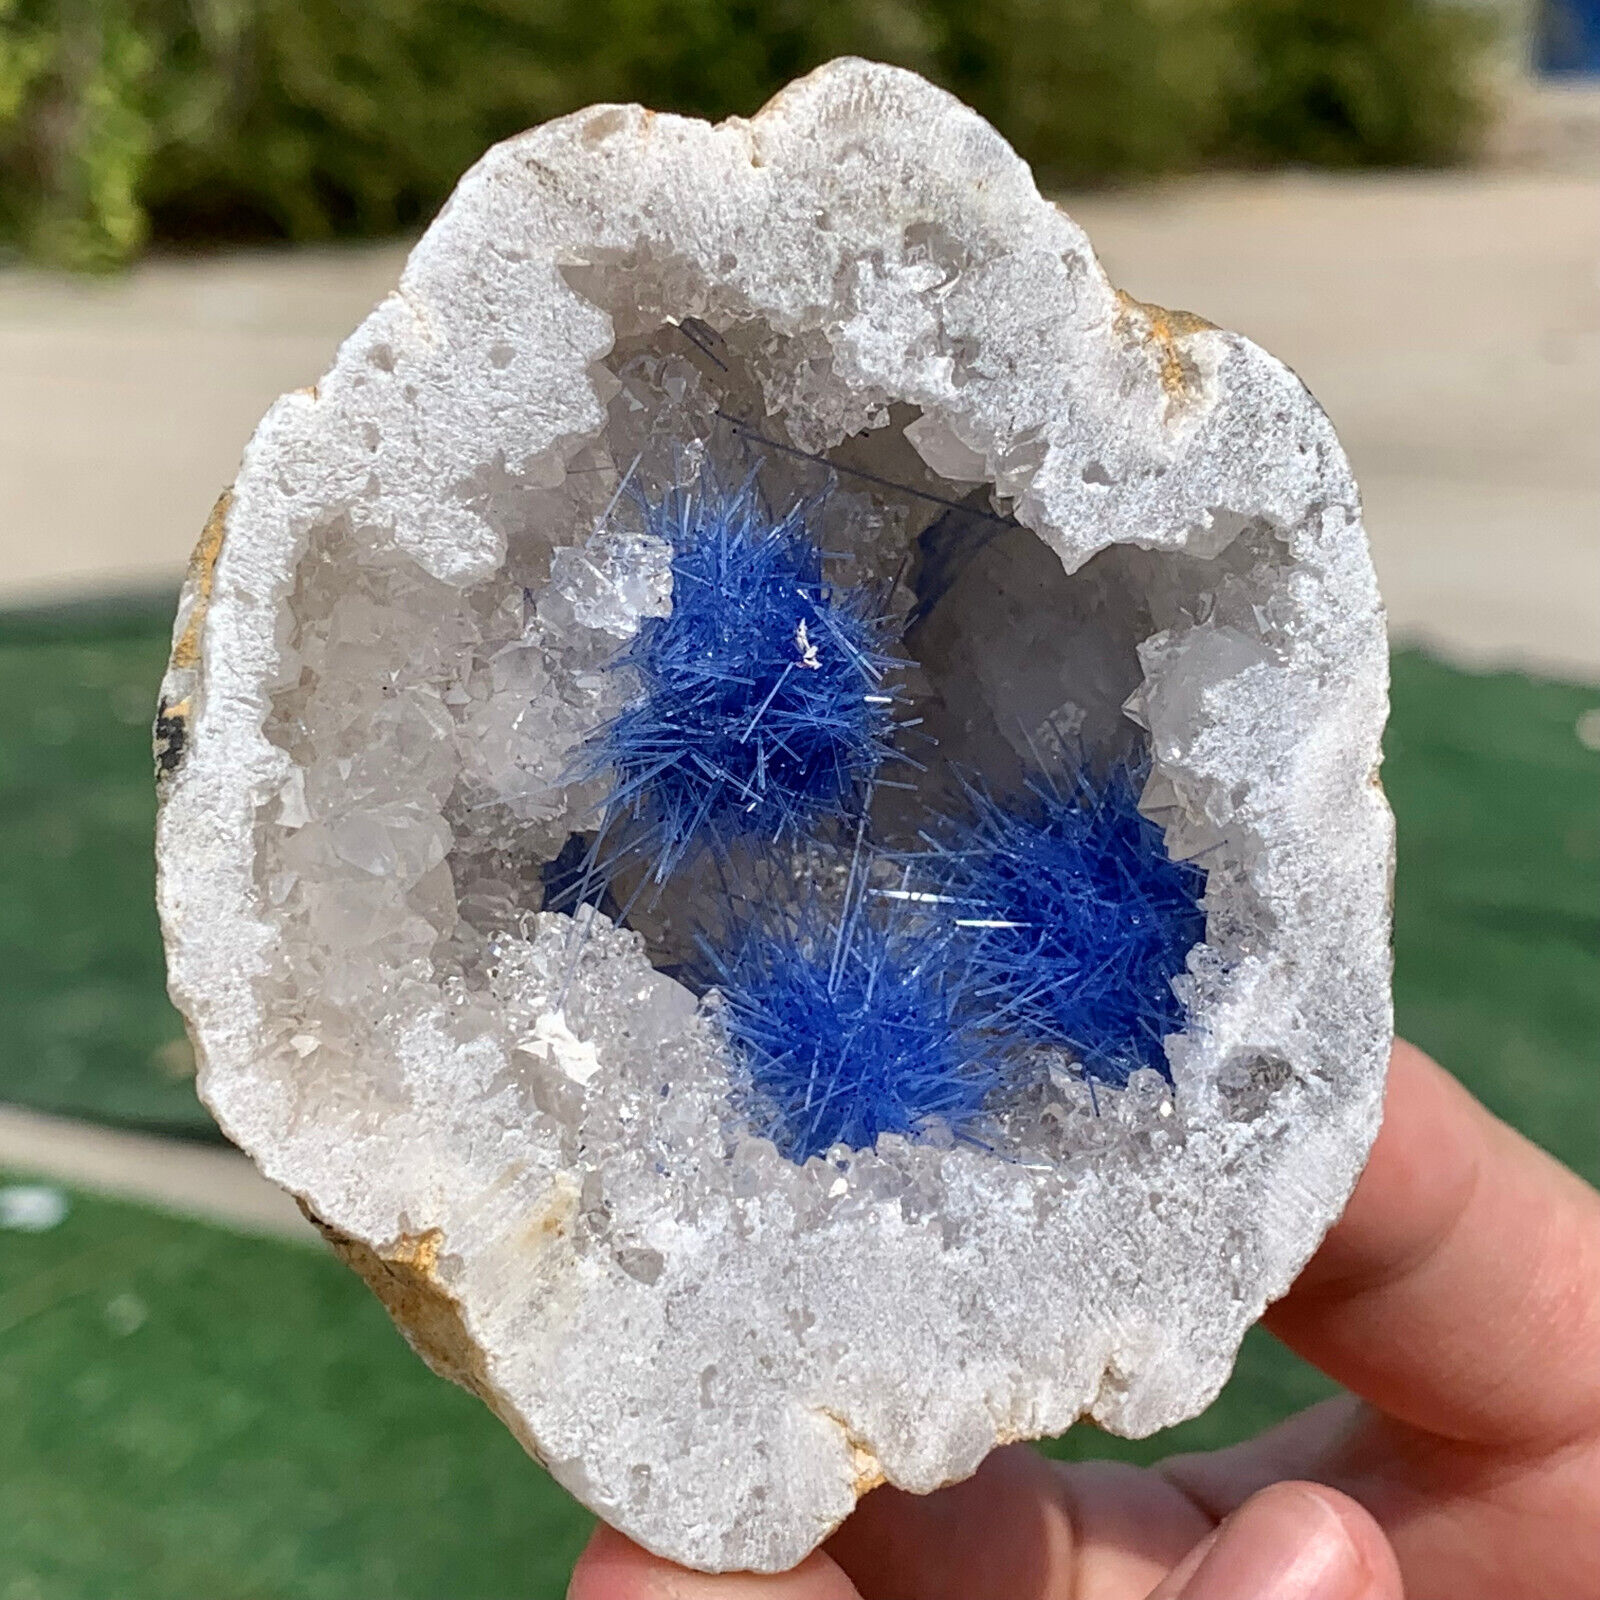 209G Rare Moroccan blue magnesite and quartz crystal coexisting specimen